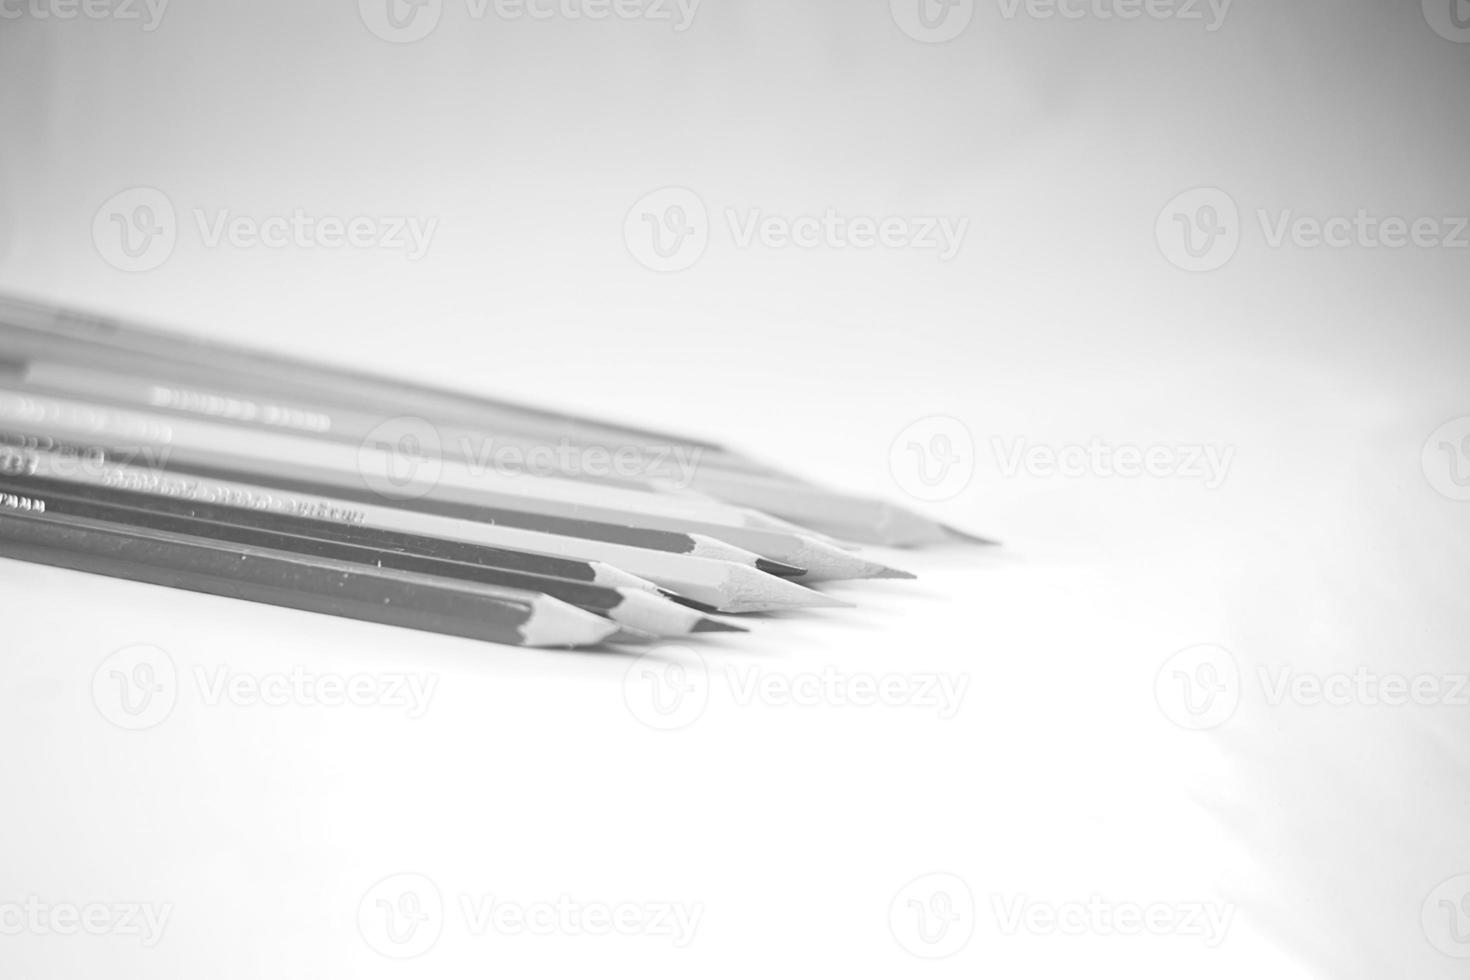 färgad pennor ordentligt fodrad upp på vit papper, där är skärpare och löv foto